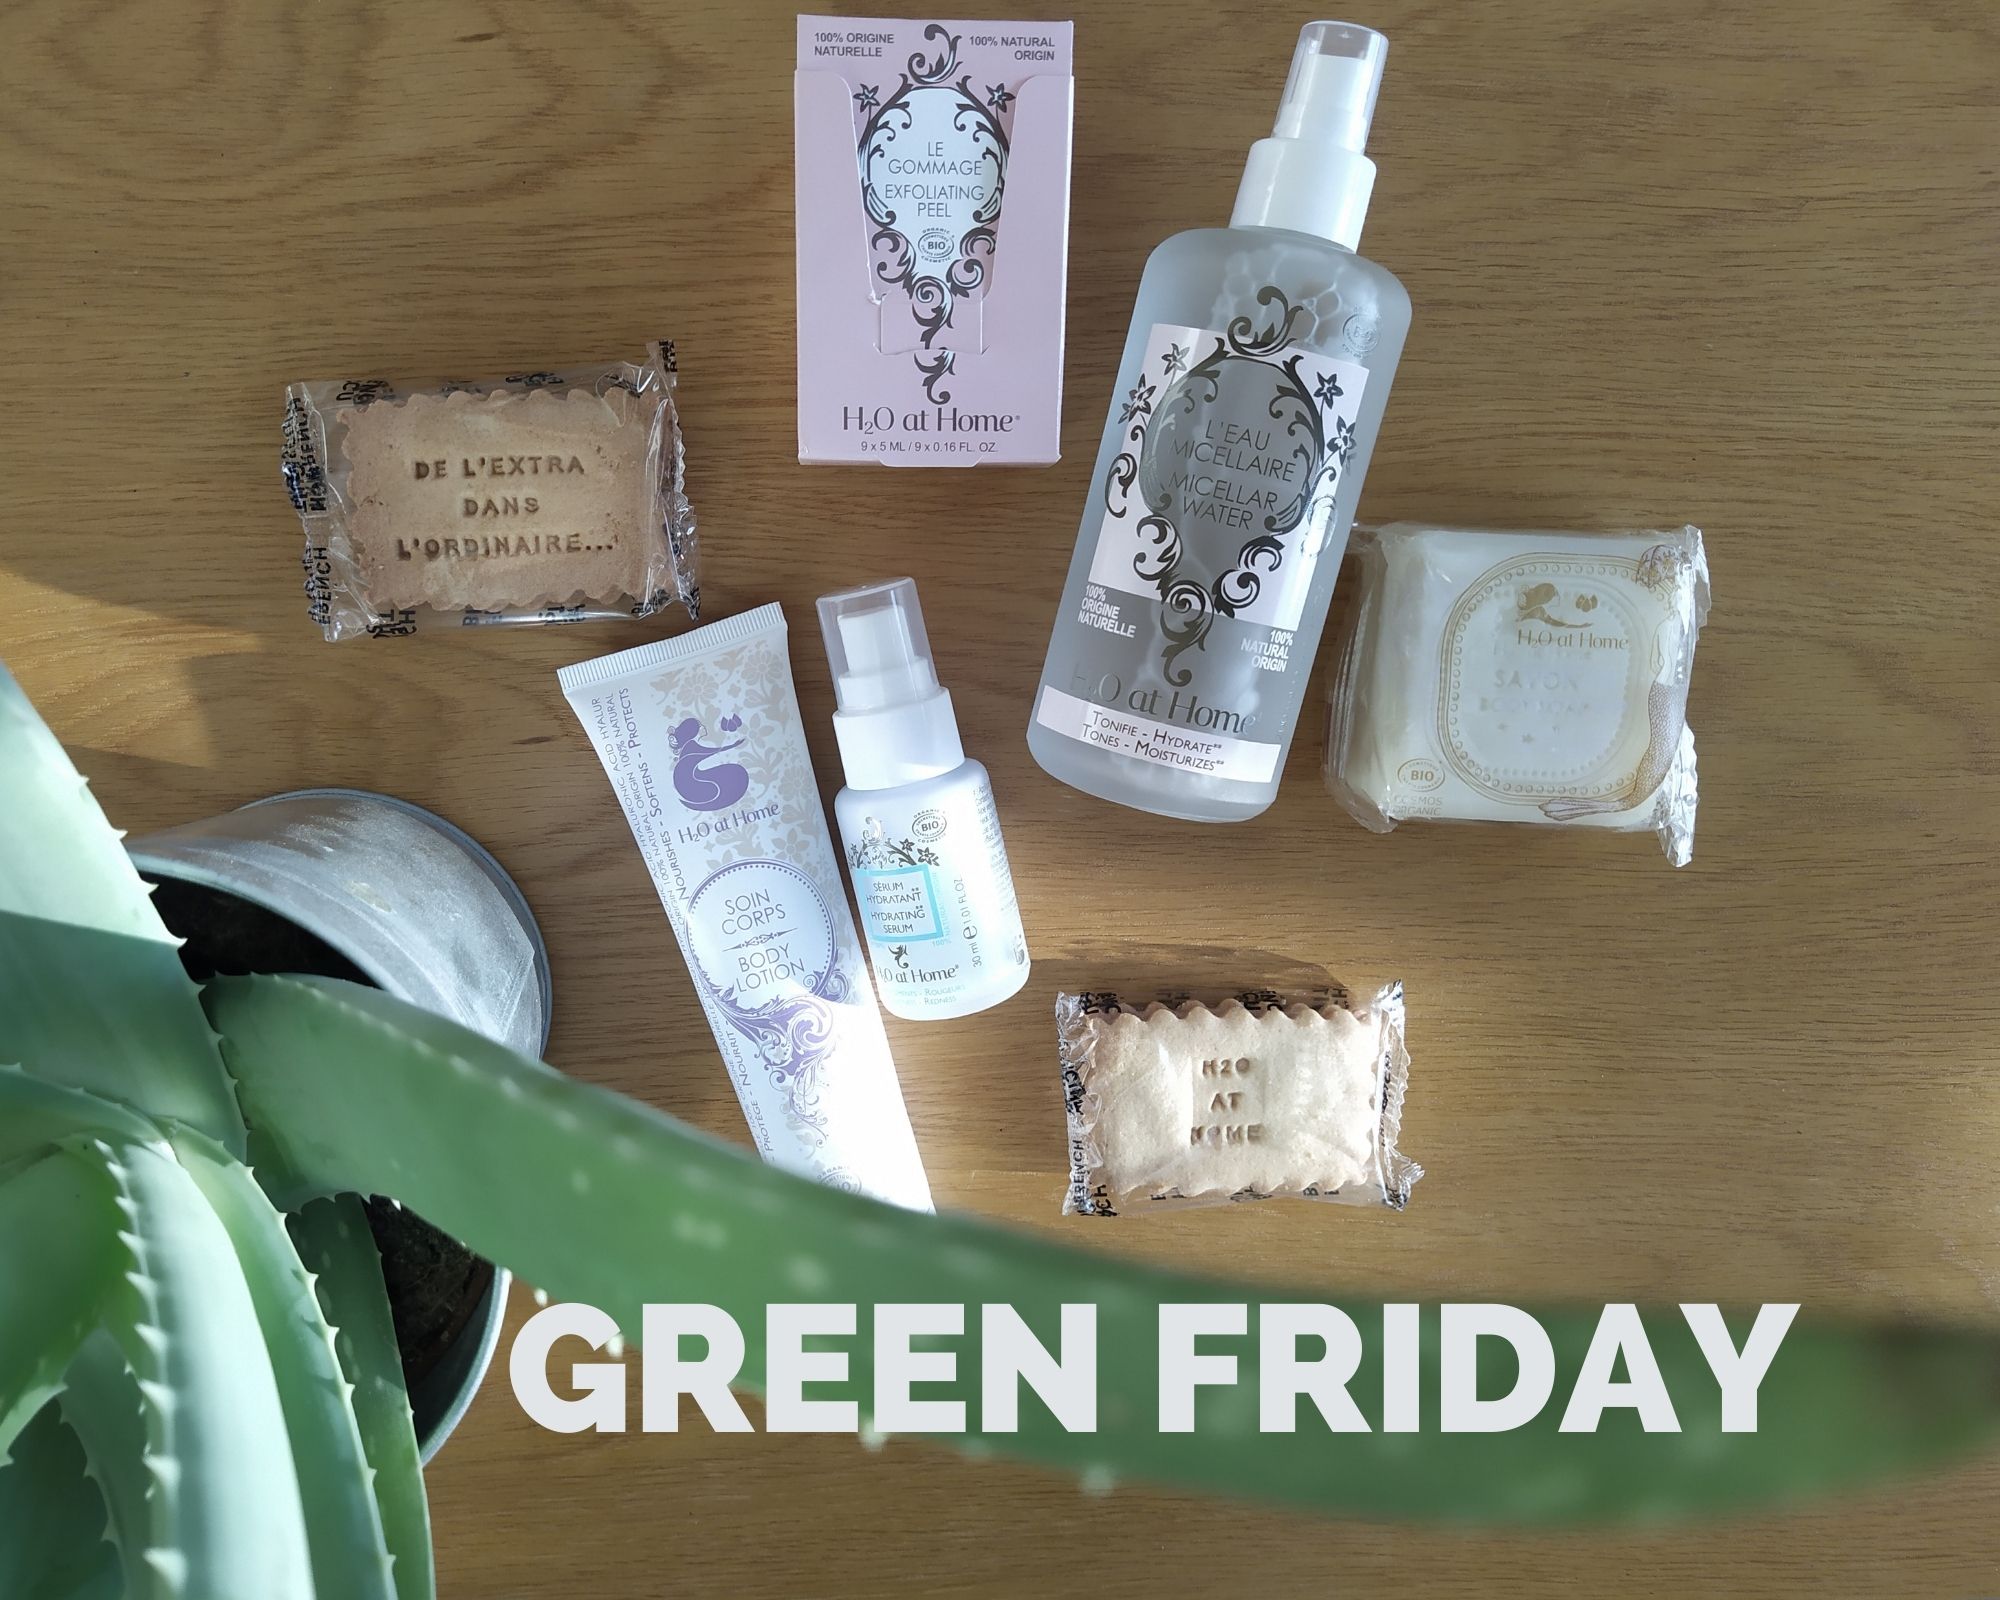 Green Friday : les produits H2O at home - Dans la peau d'une fille